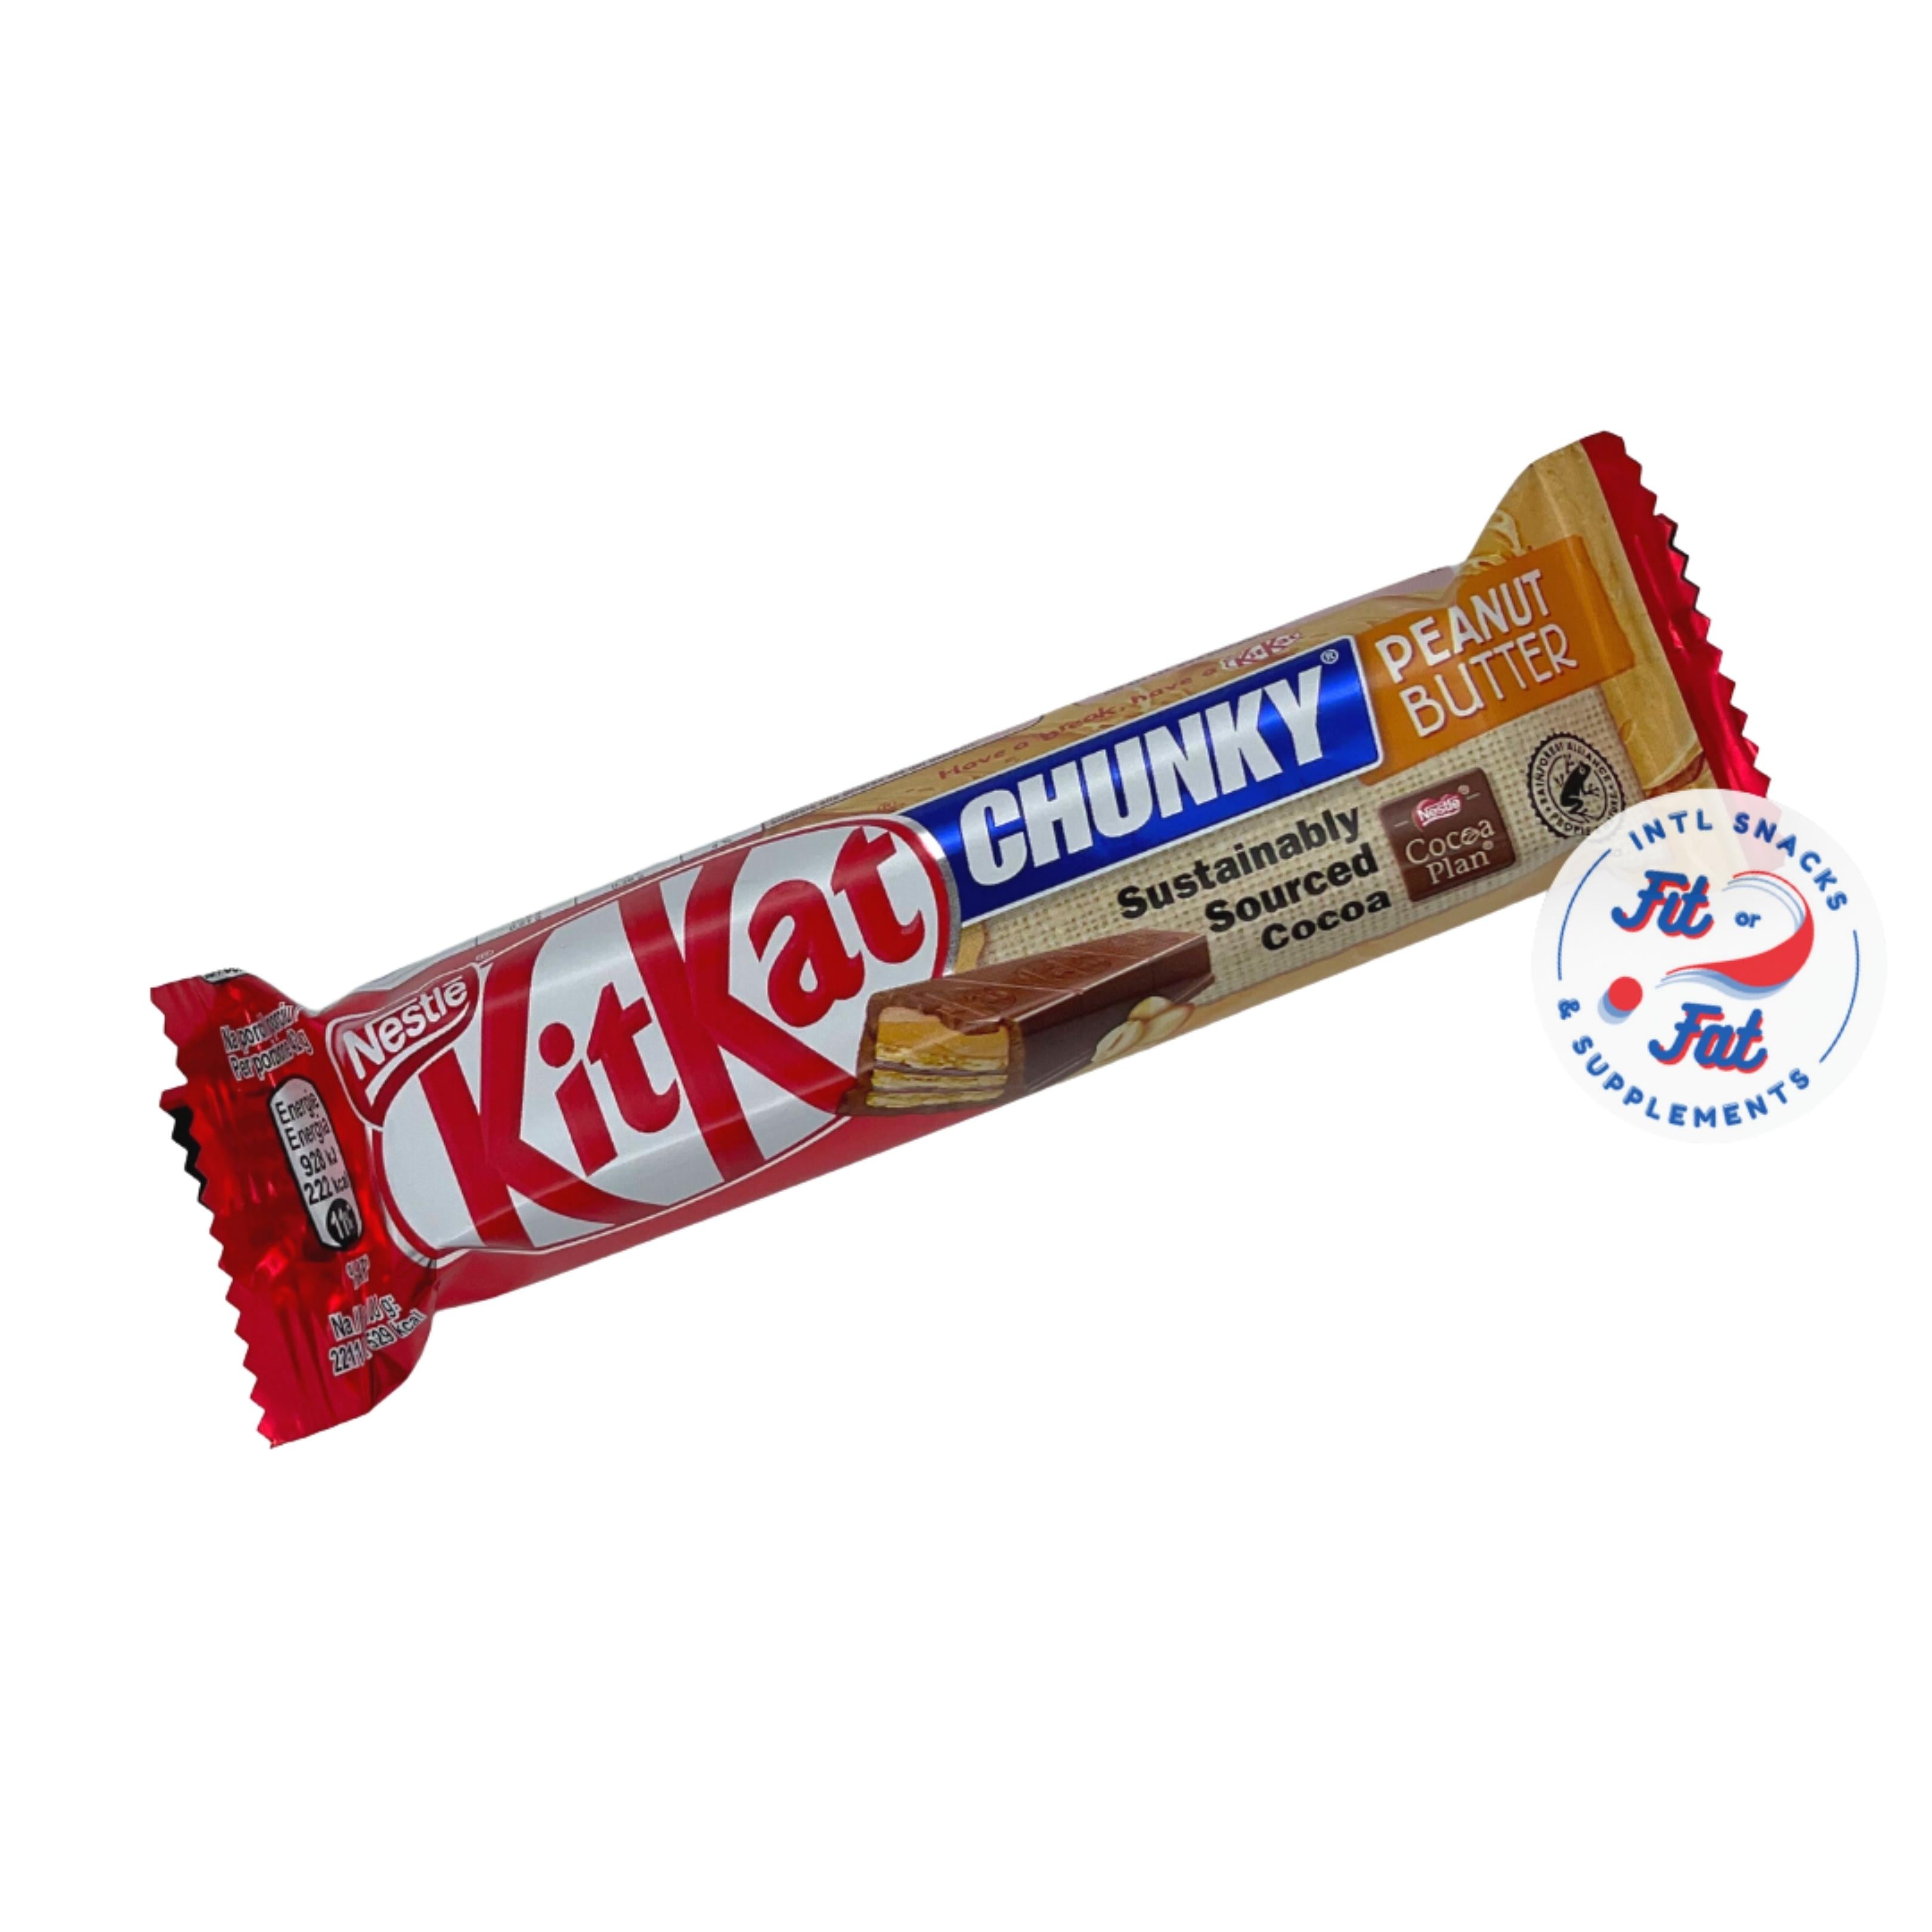 Nestlè - Kit Kat Chunky Peanut Butter 42g